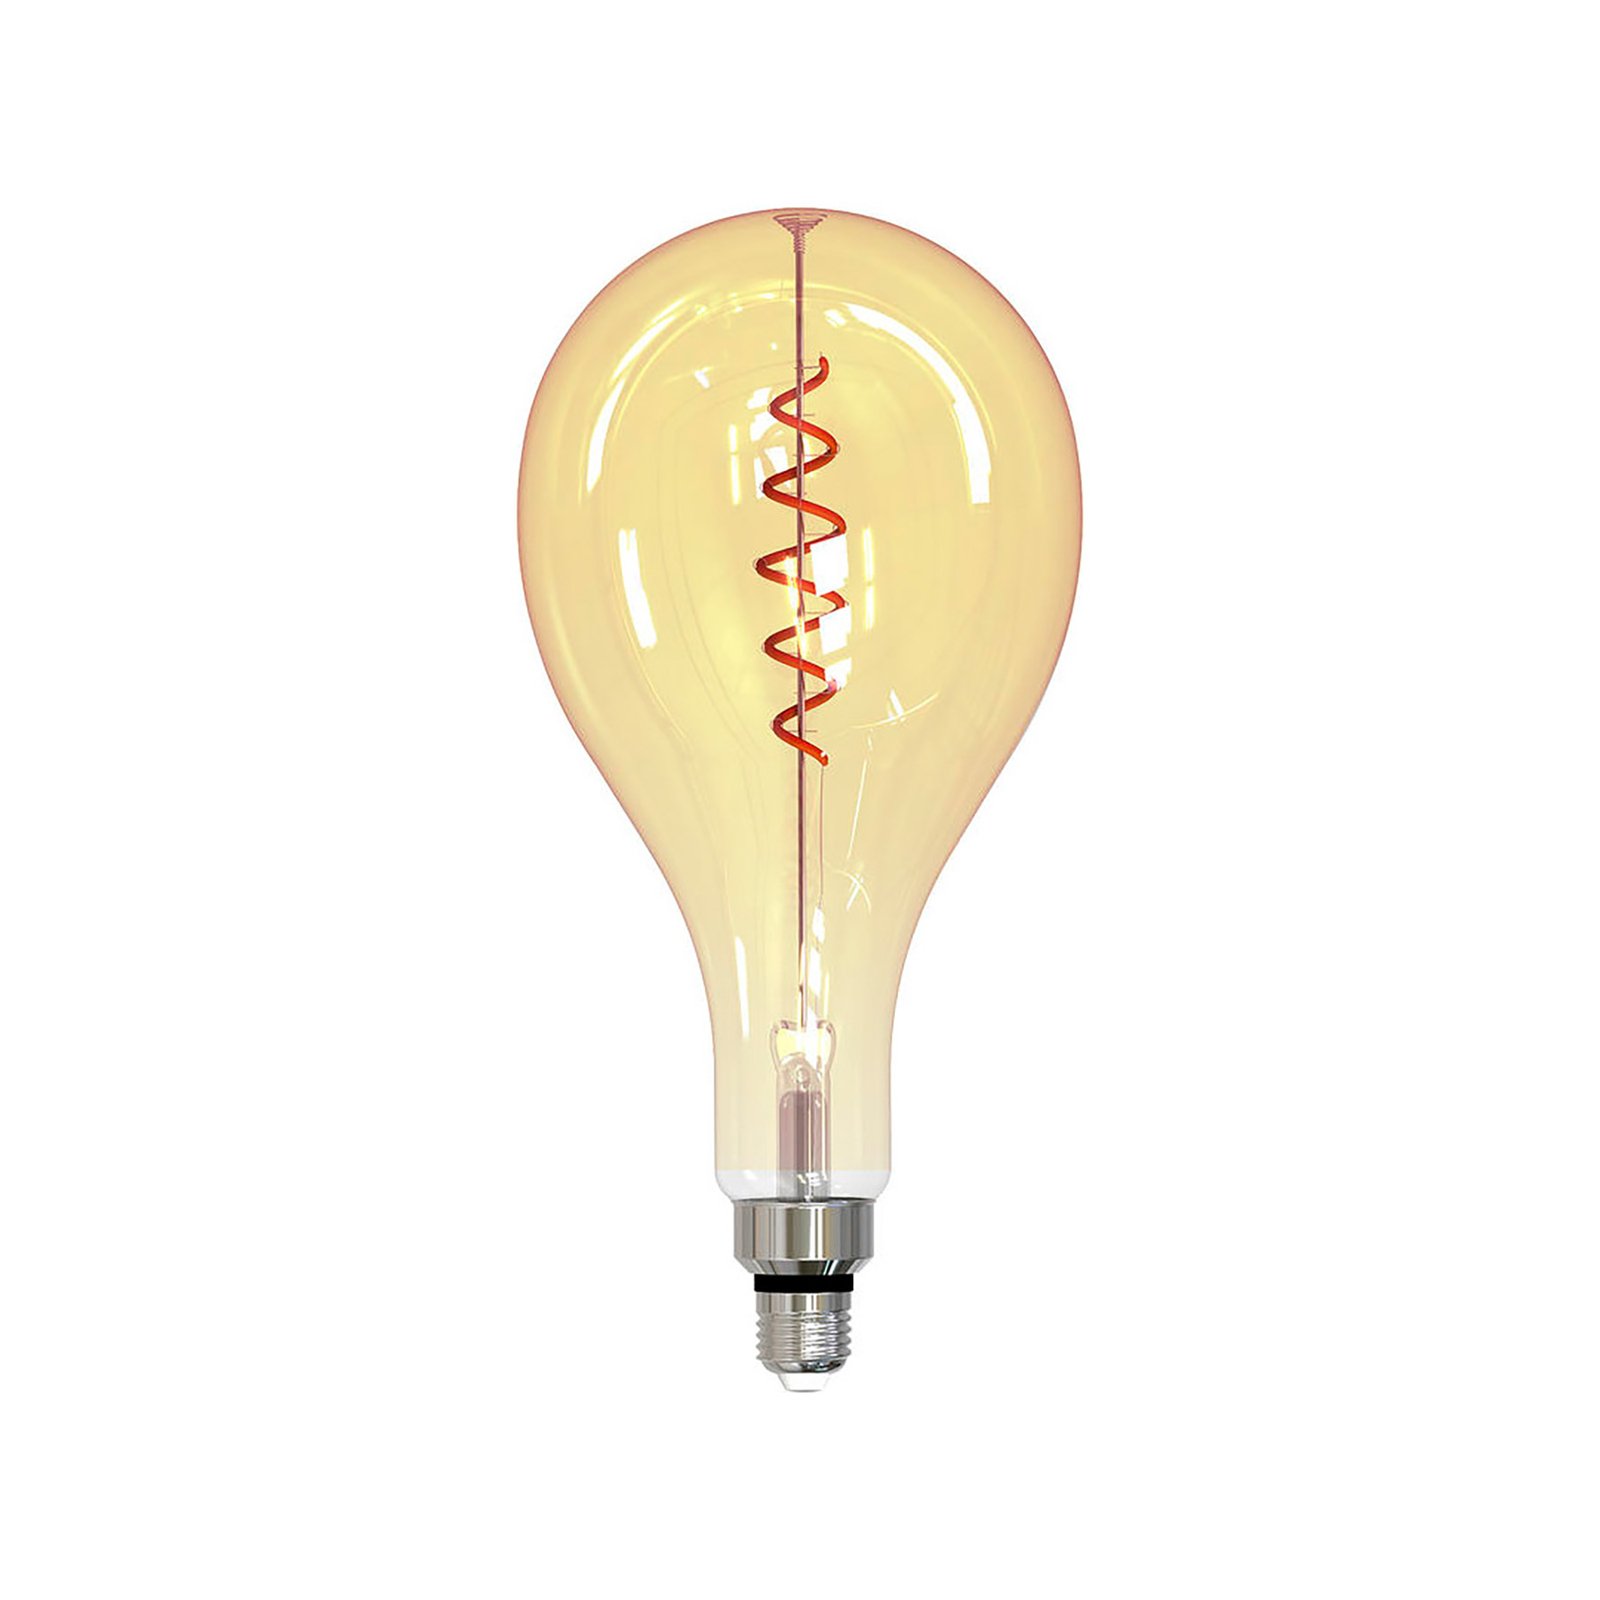 Müller Licht tint white LED bulb E27 4.9 W gold